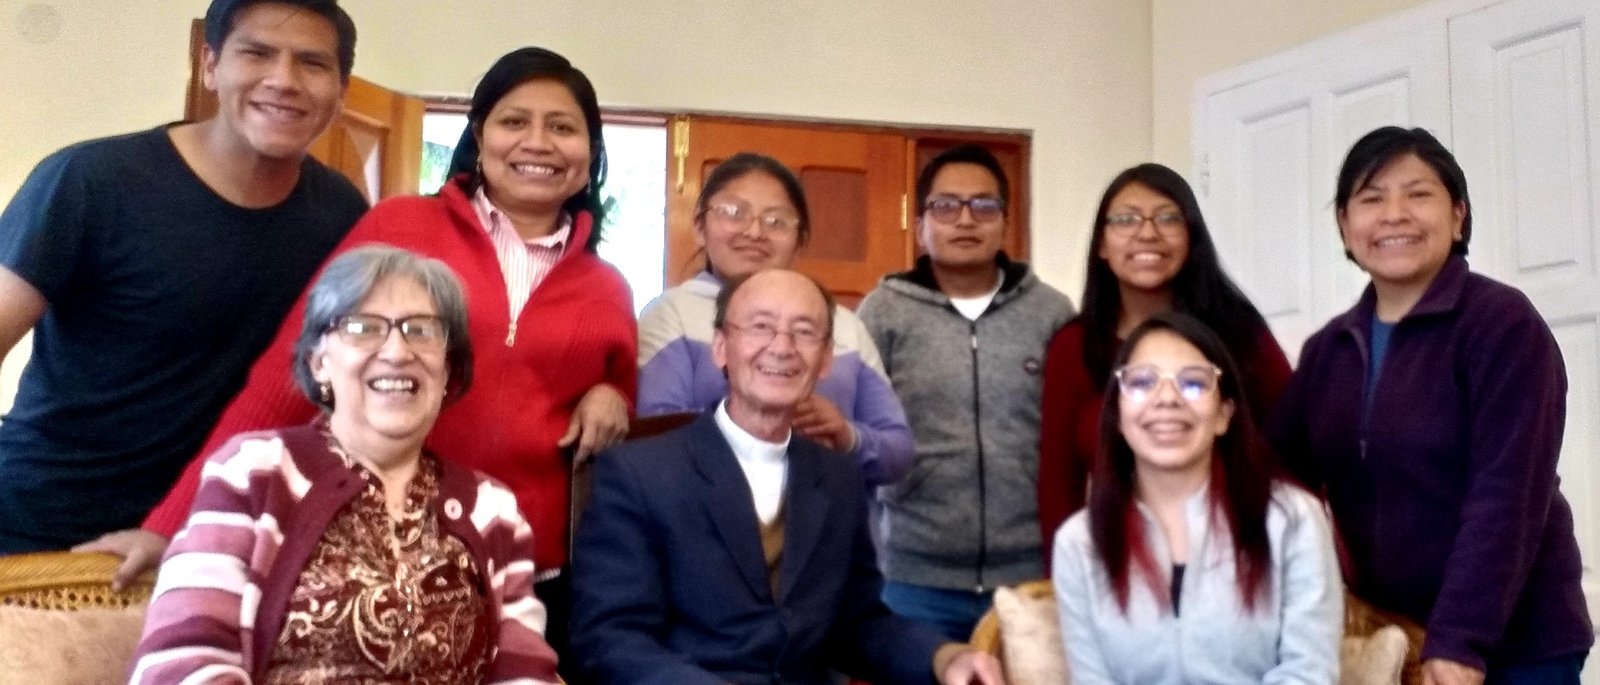 <strong>Jóvenes quieren vivir la santidad en la cotidianidad. Motus Christi en La Paz</strong>